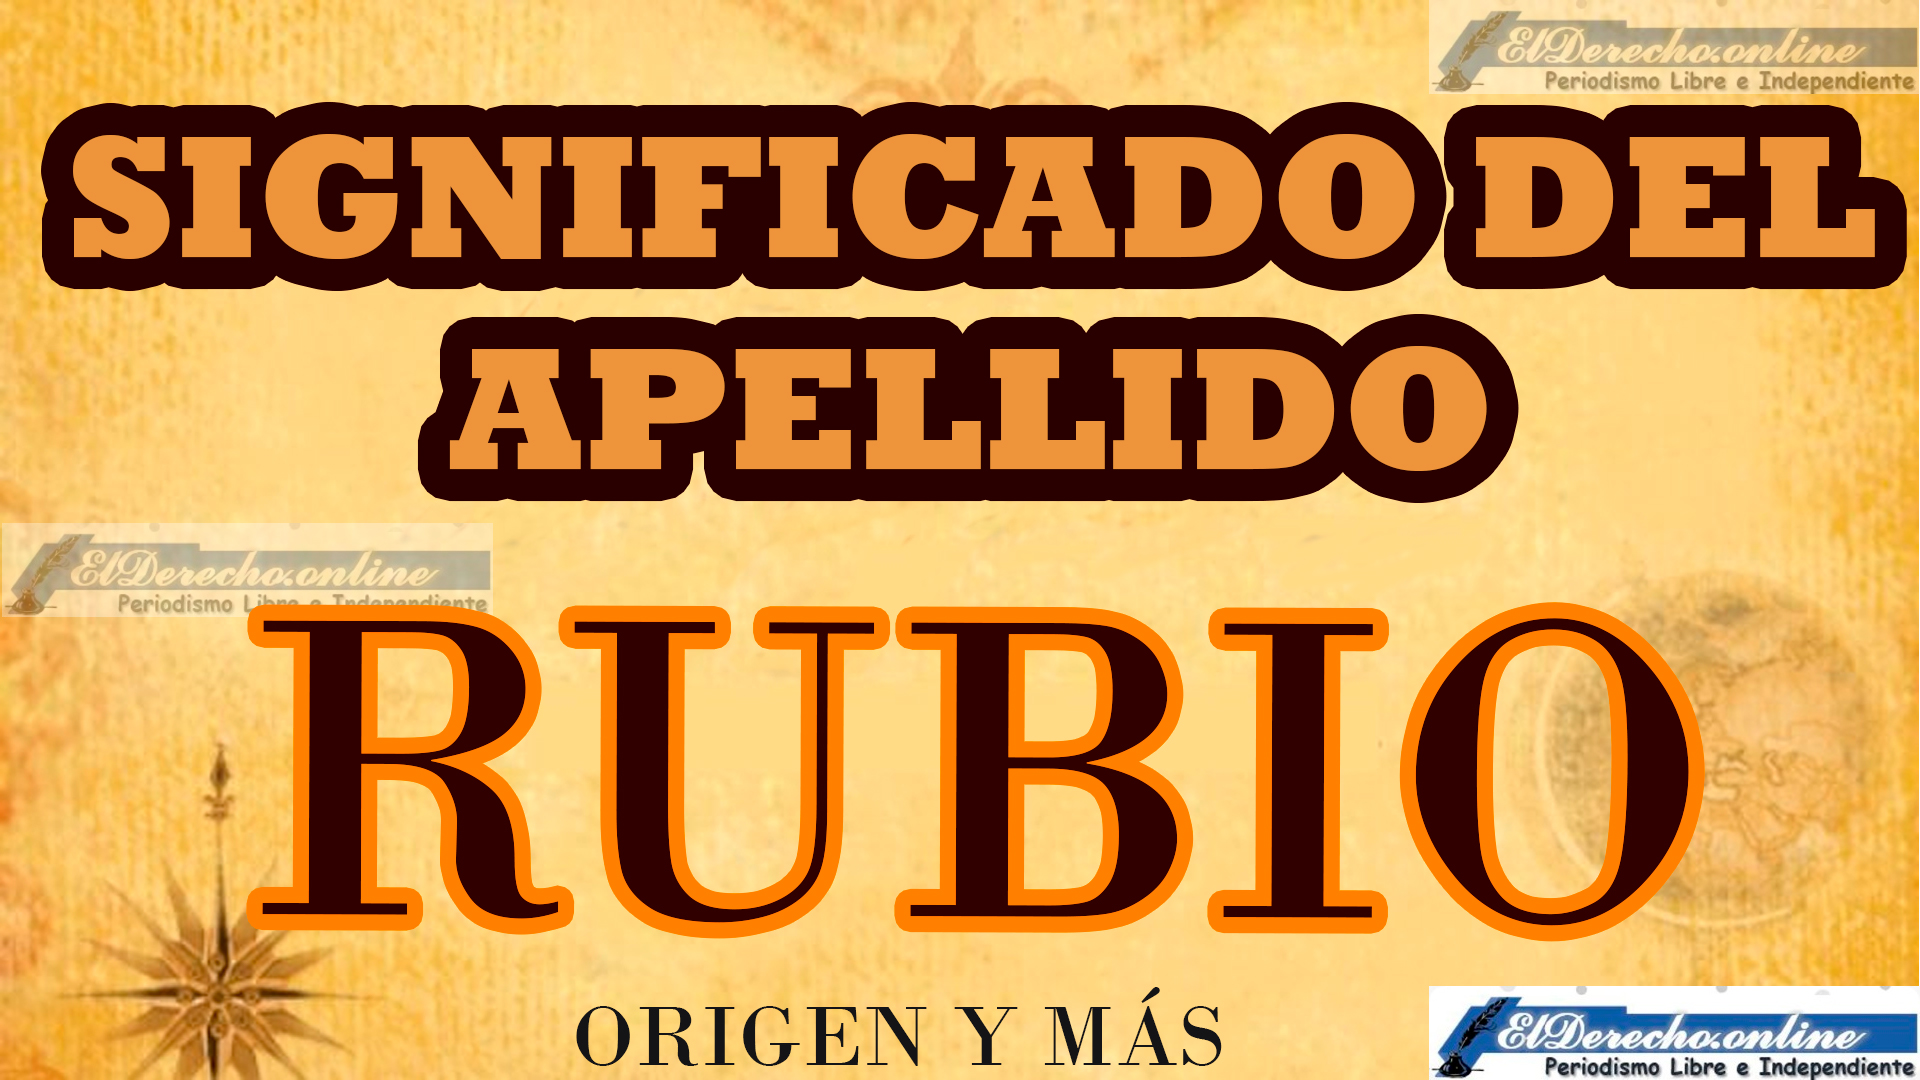 Significado del apellido Rubio, Origen y más